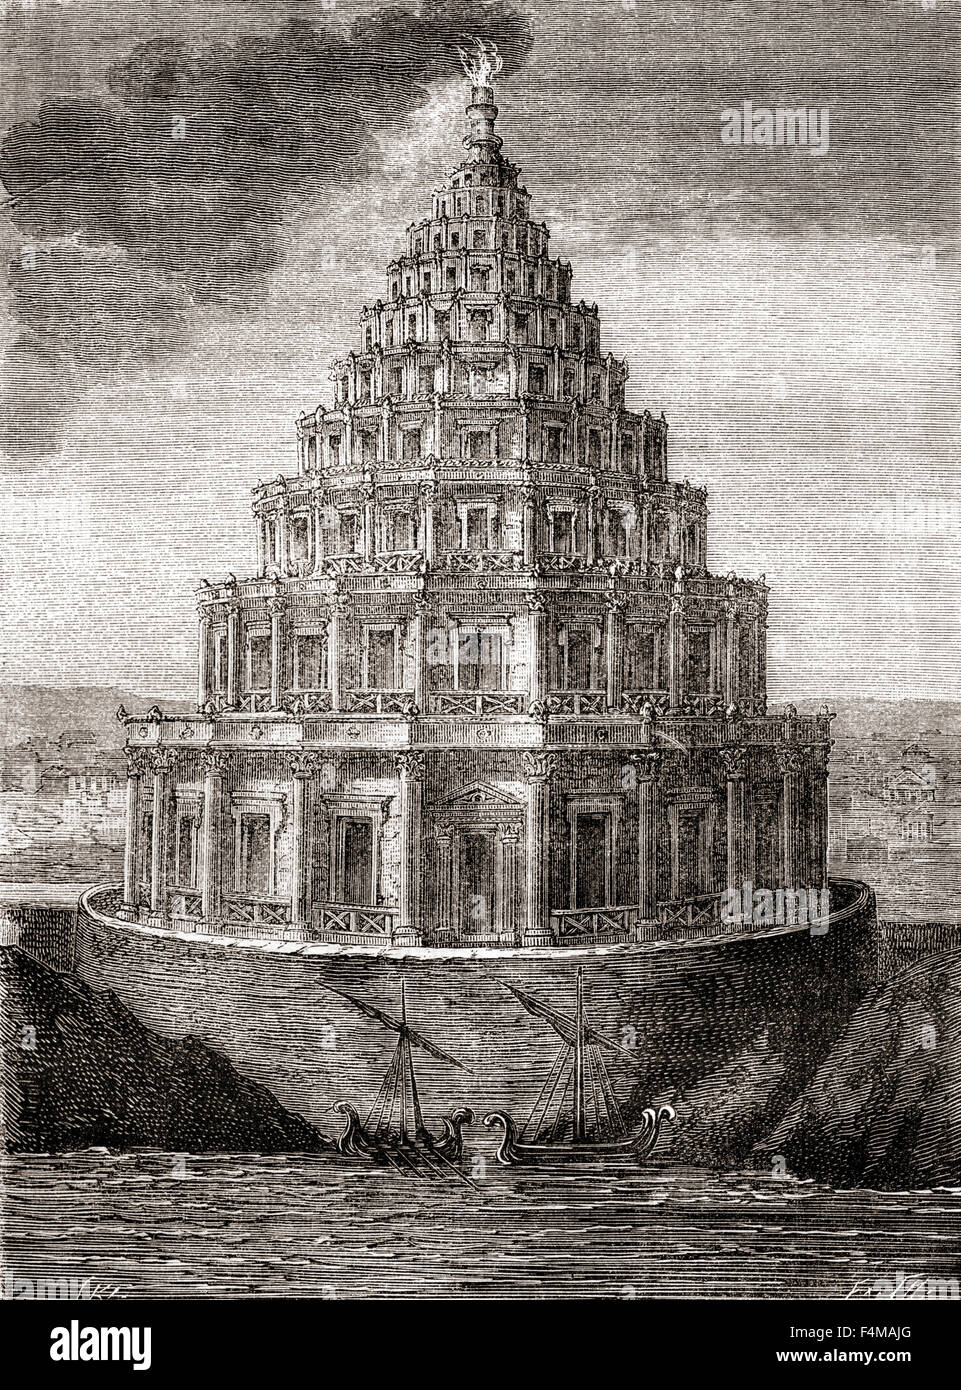 Une représentation de l'imaginaire du xixe siècle Le Phare d'Alexandrie, aka phare d'Alexandrie. Un phare construit par le Royaume ptolémaïque entre 280 et 247 avant JC. Banque D'Images